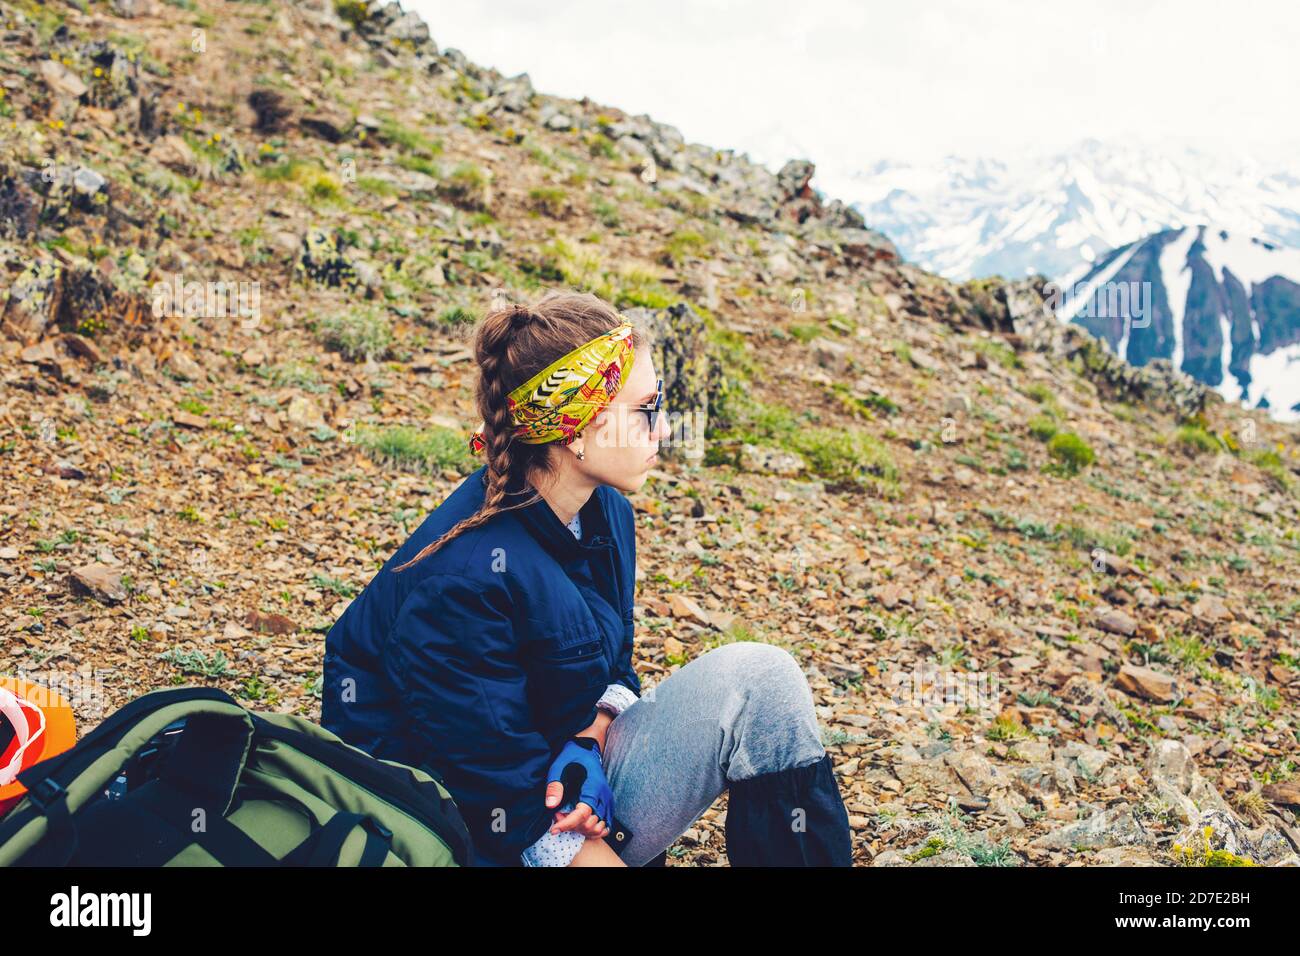 Frau Reisende Wandern in den Bergen Sitzen Camping mit Rucksack Reisen Lifestyle Abenteuer Konzept aktiv Sommerferien Outdoor Bergsteigen Stockfoto